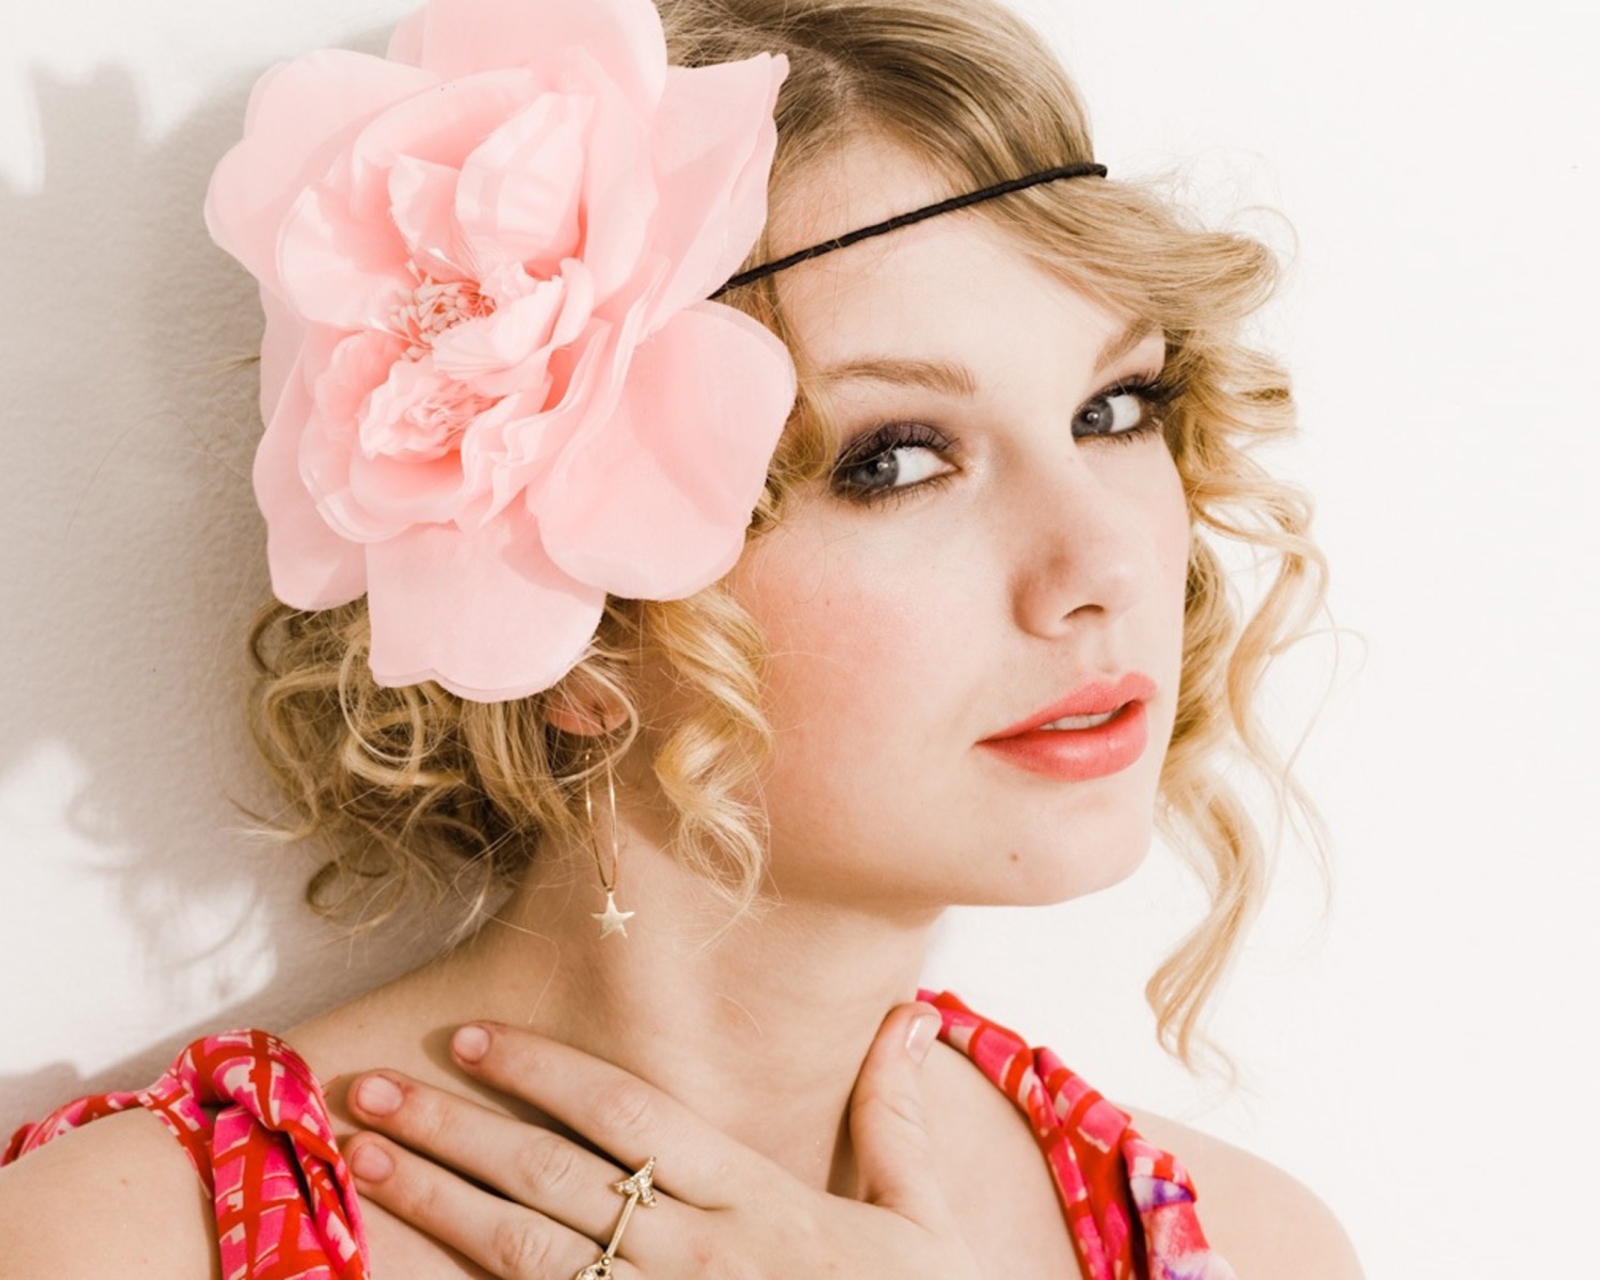 Обои Taylor Swift With Pink Rose On Head 1600x1280